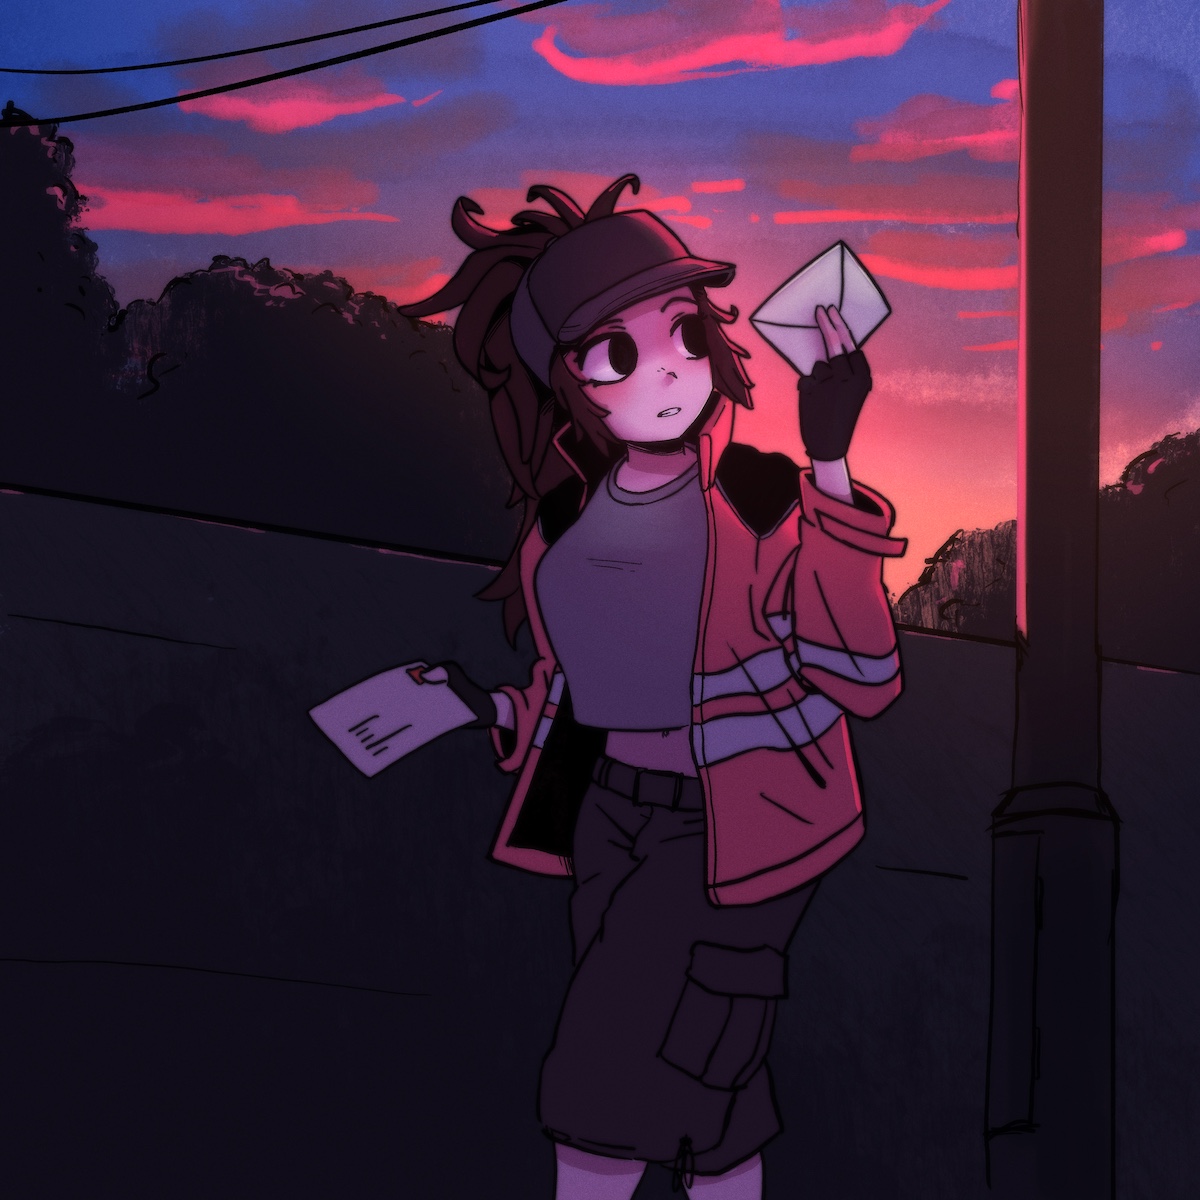 Post at dusk